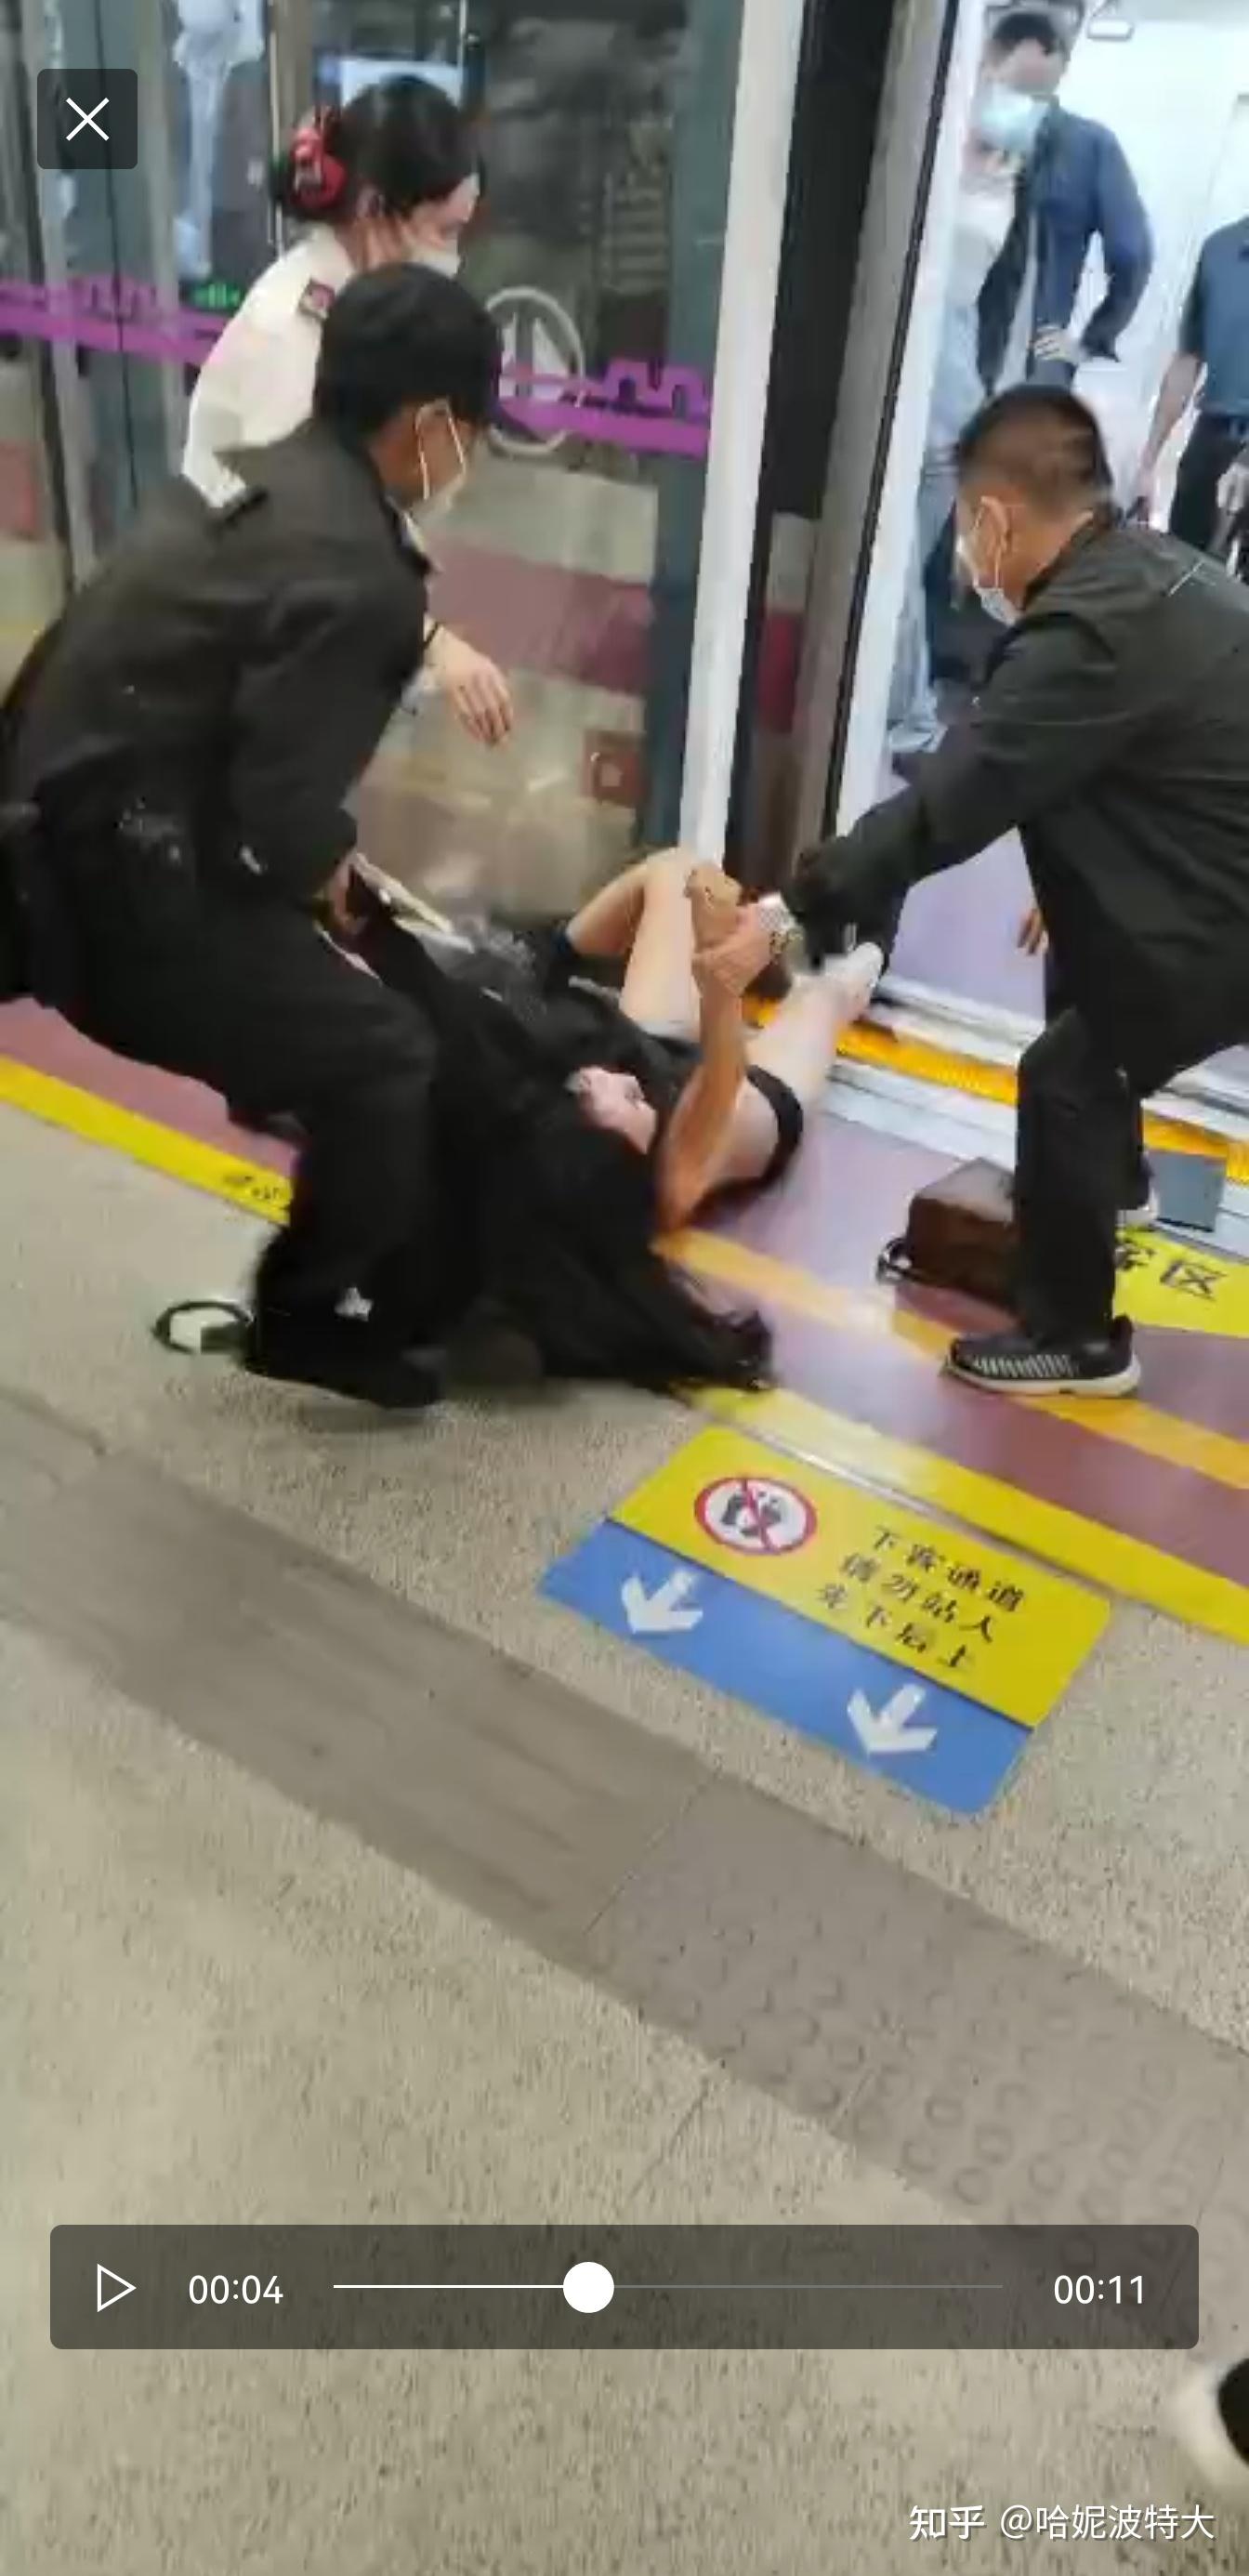 如果西安地铁被扒的是位男性您会如何看待这个事件限男性回答